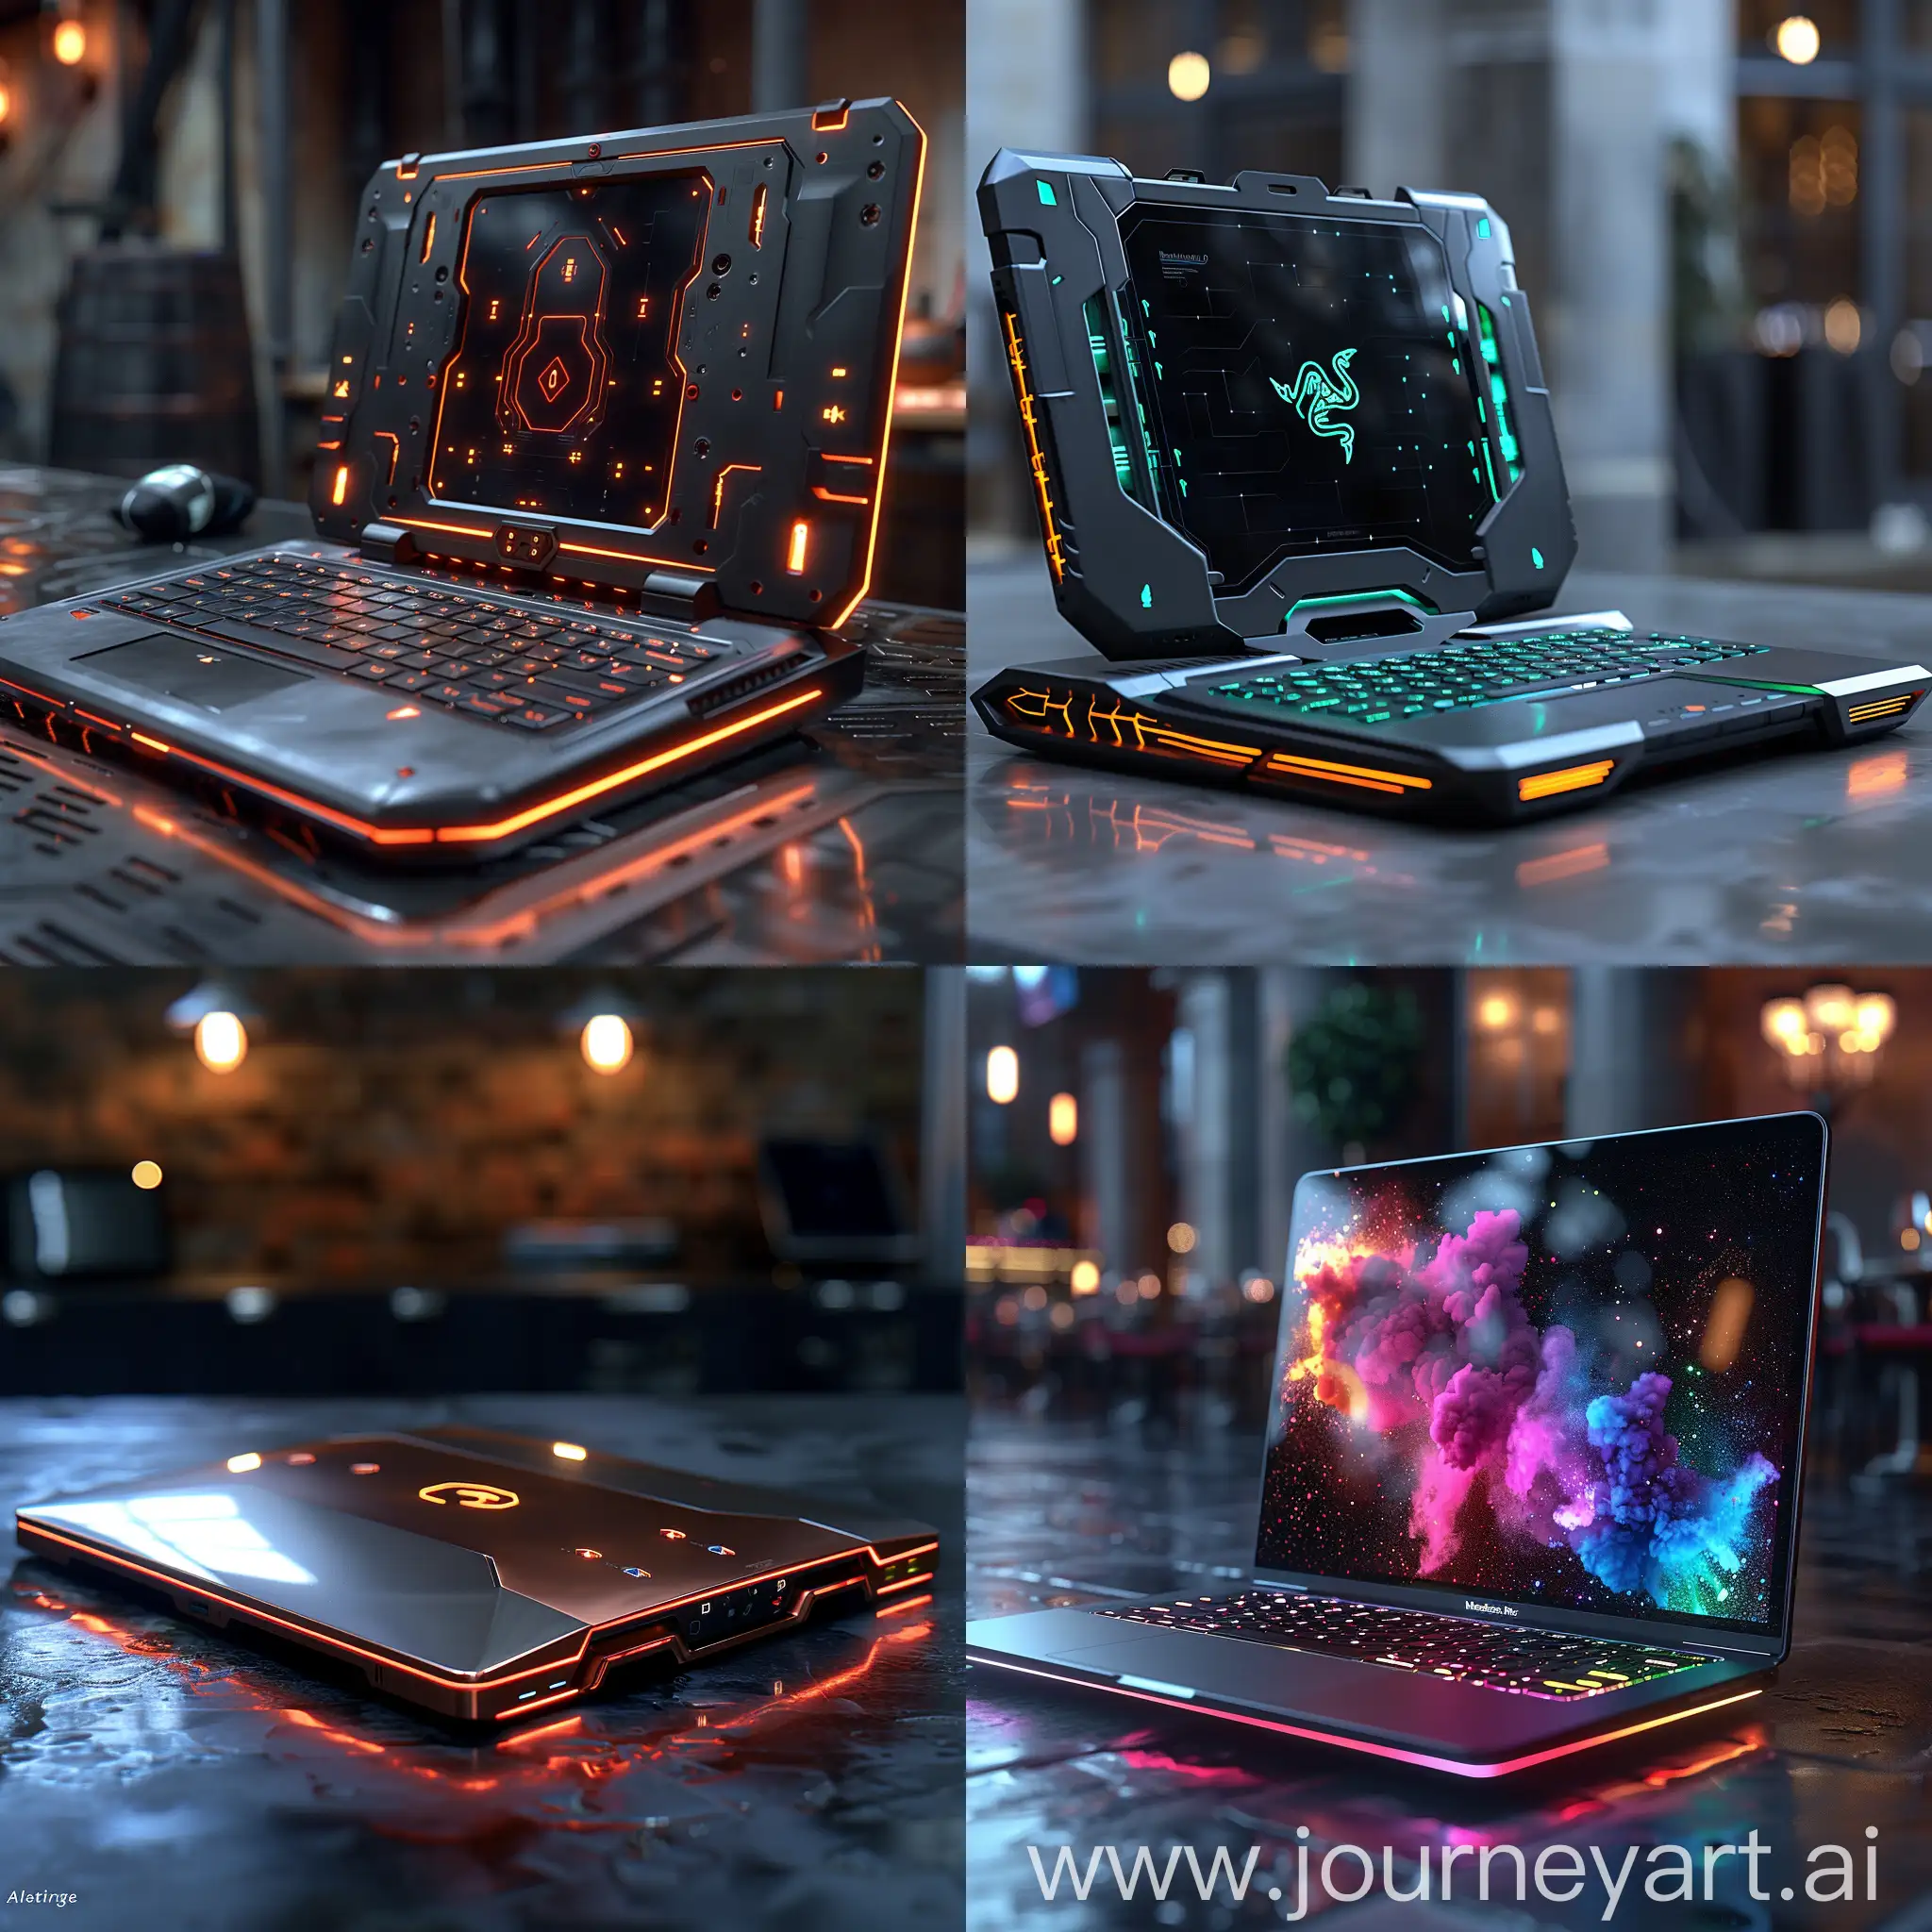 Insanely ultramodern, futuristic laptop, octane render --stylize 1000